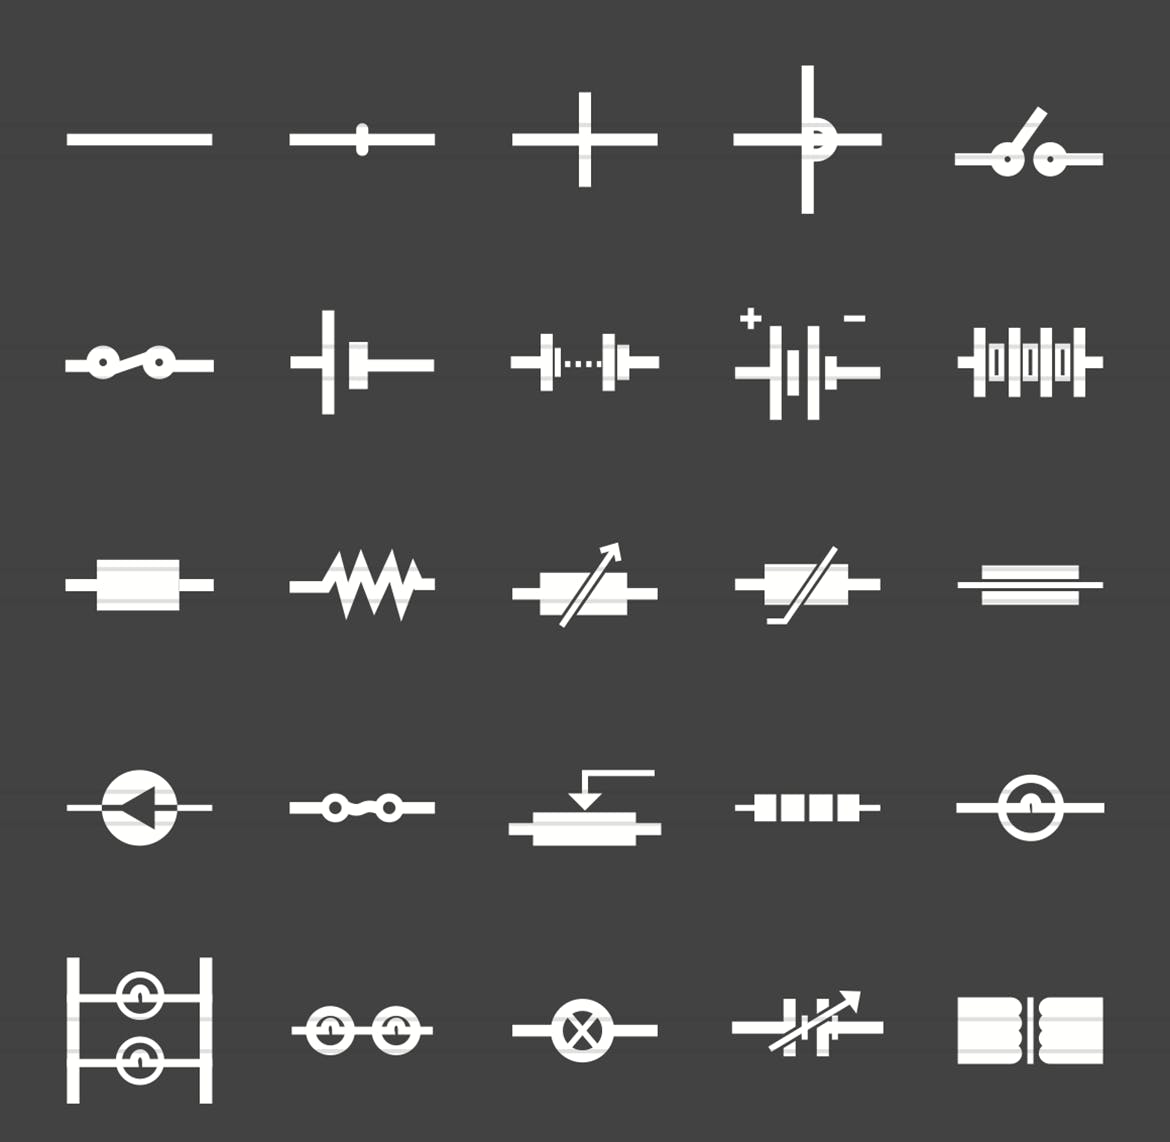 50枚电路线路板主题反转色字体第一素材精选图标 50 Electric Circuits Glyph Inverted Icons插图(1)